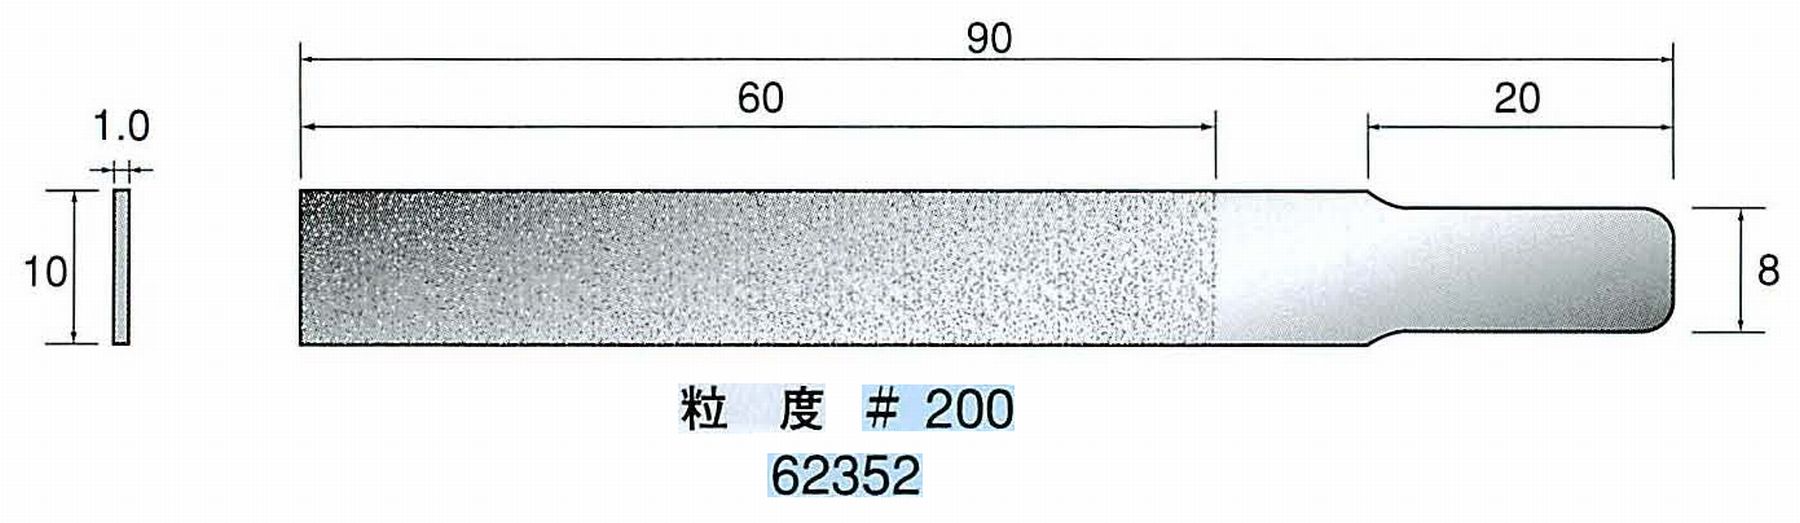 ナカニシ/NAKANISHI ハンディタイプ 電動・エアーヤスリ(往復動) ラスター専用工具 ダイヤモンドヤスリフラットタイプ 62352